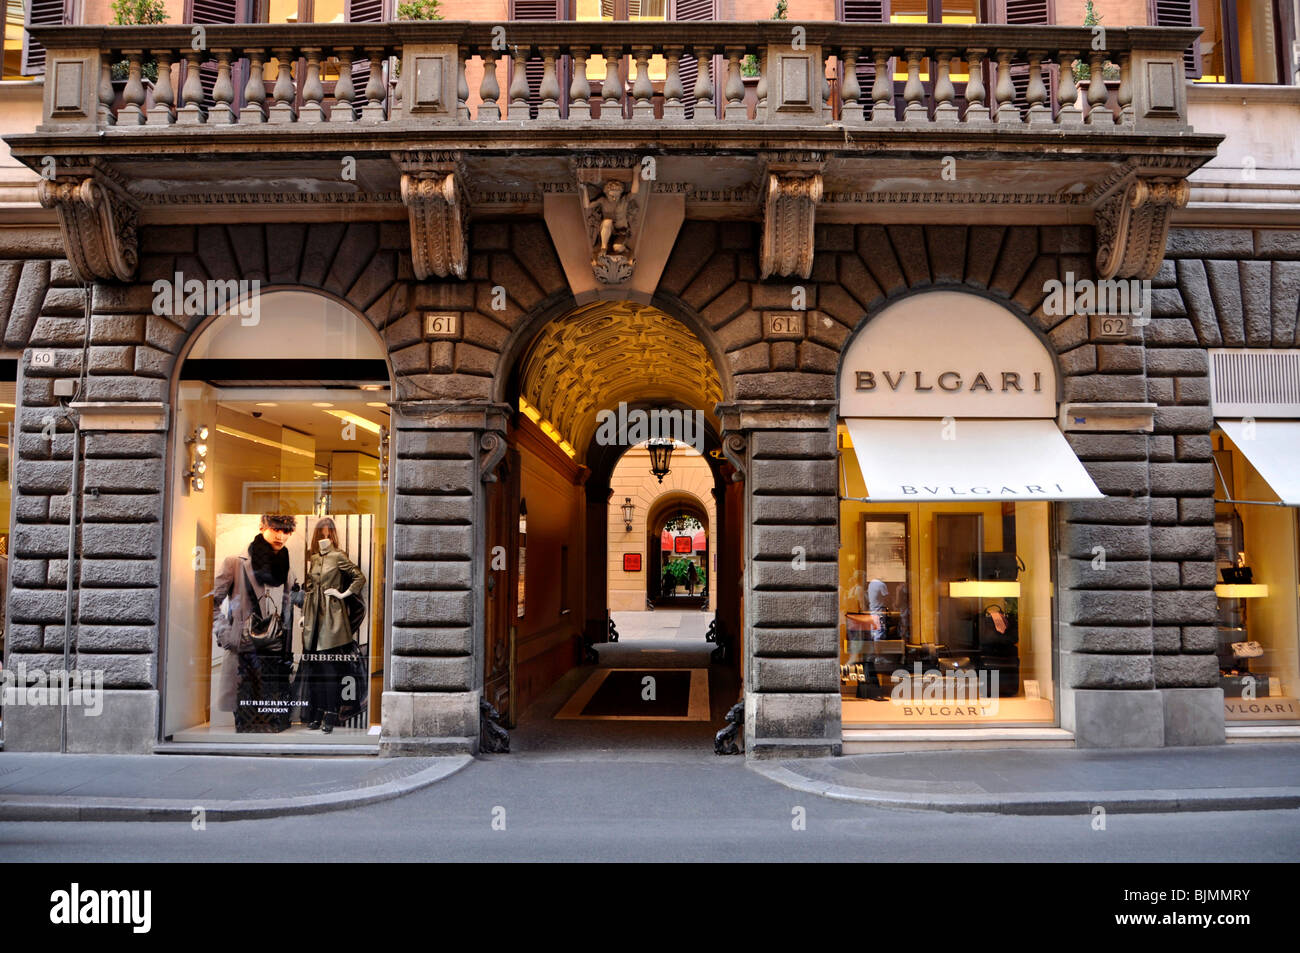 Burberry negozio di moda, gioielliere Bulgari, Via dei Condotti, Roma, Lazio, l'Italia, Europa Foto Stock